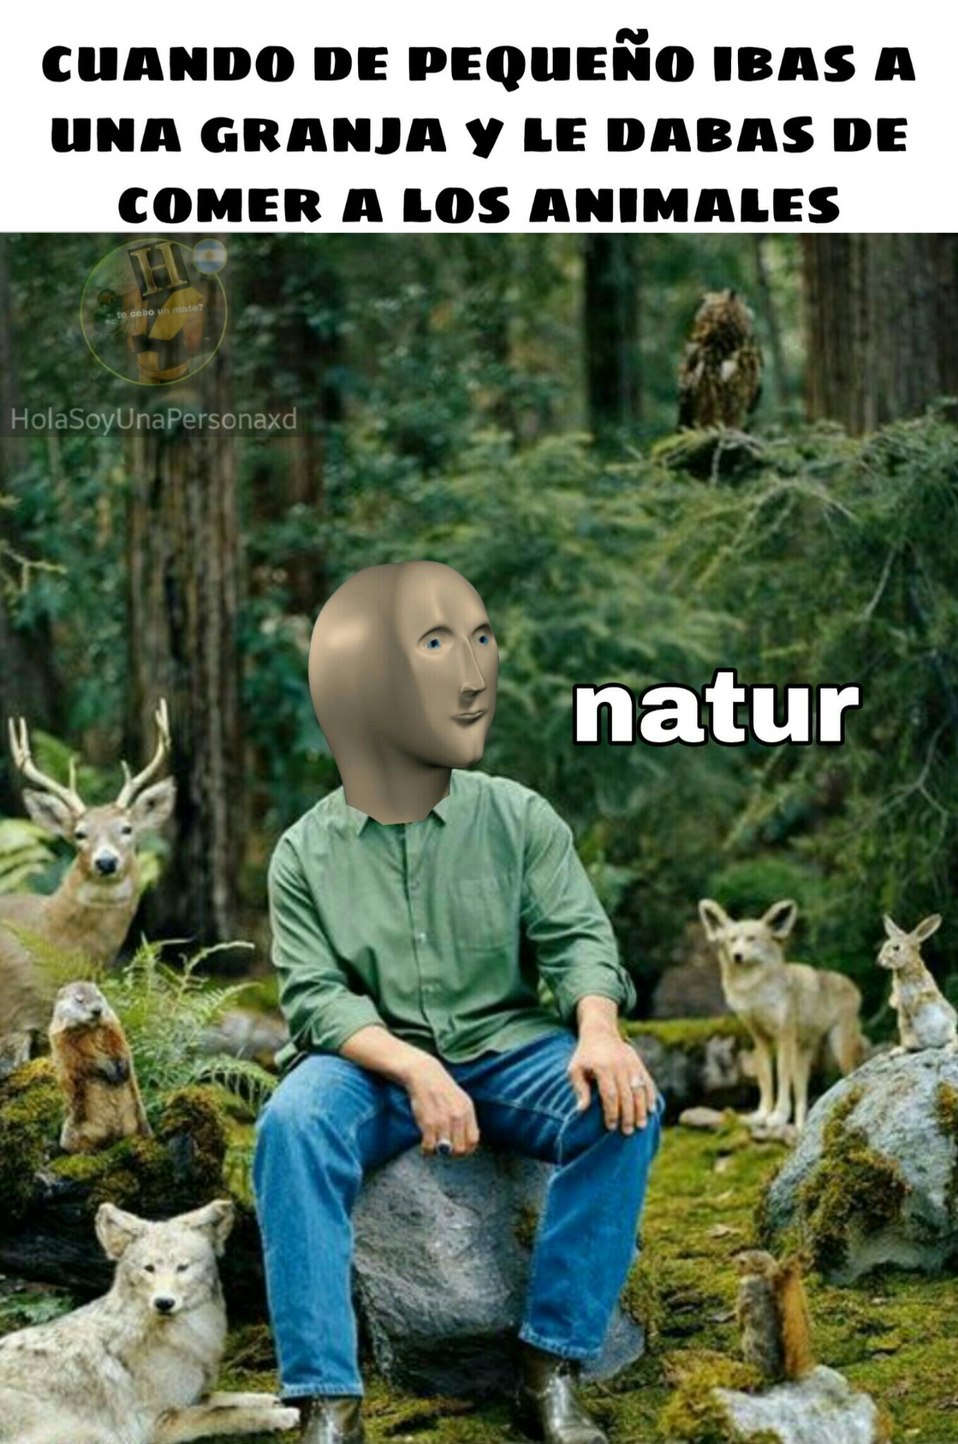 Natur - meme